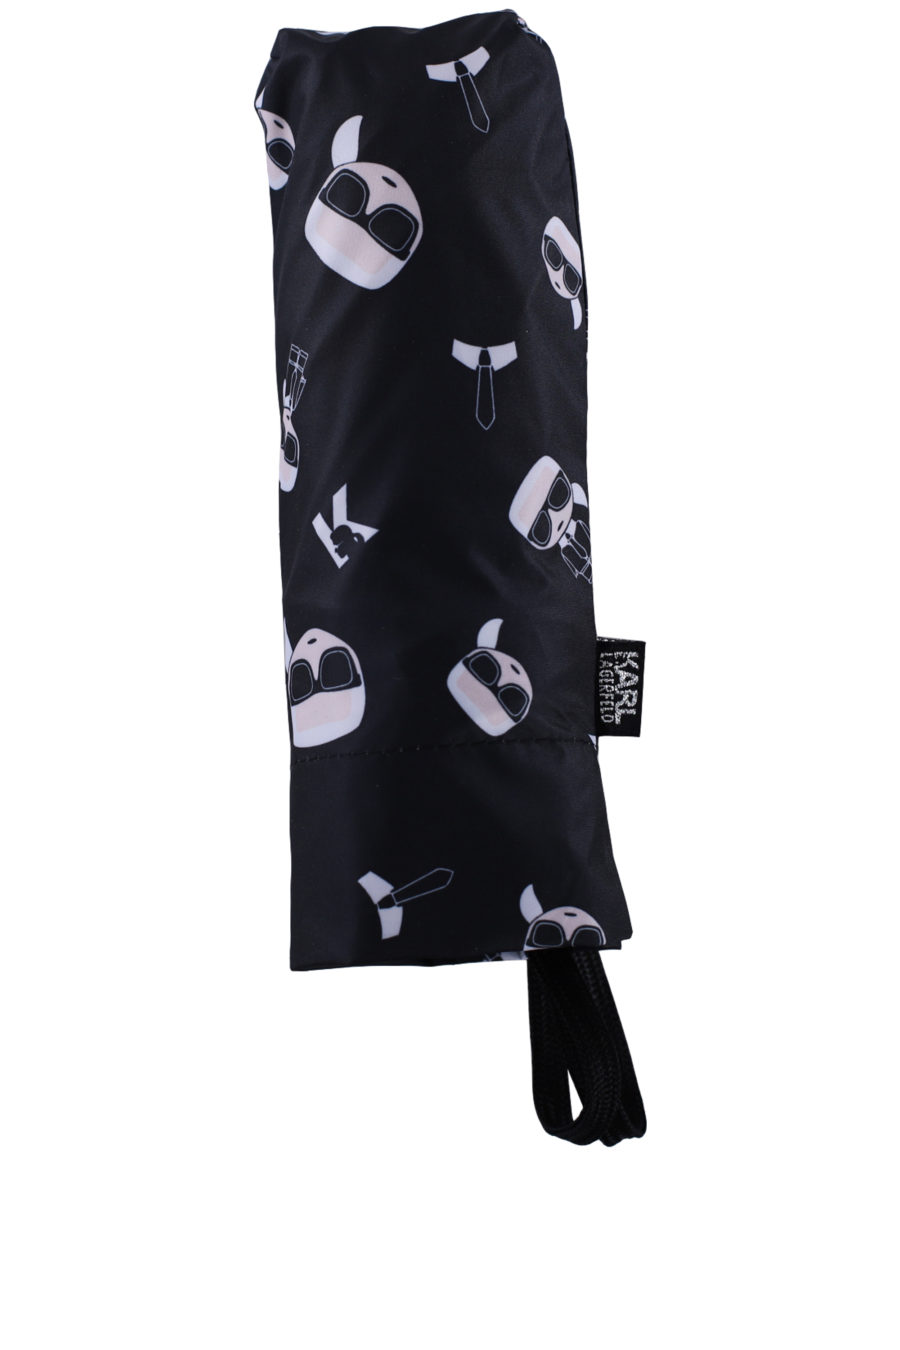 Paraguas color negro con patrón de la marca - IMG 0135